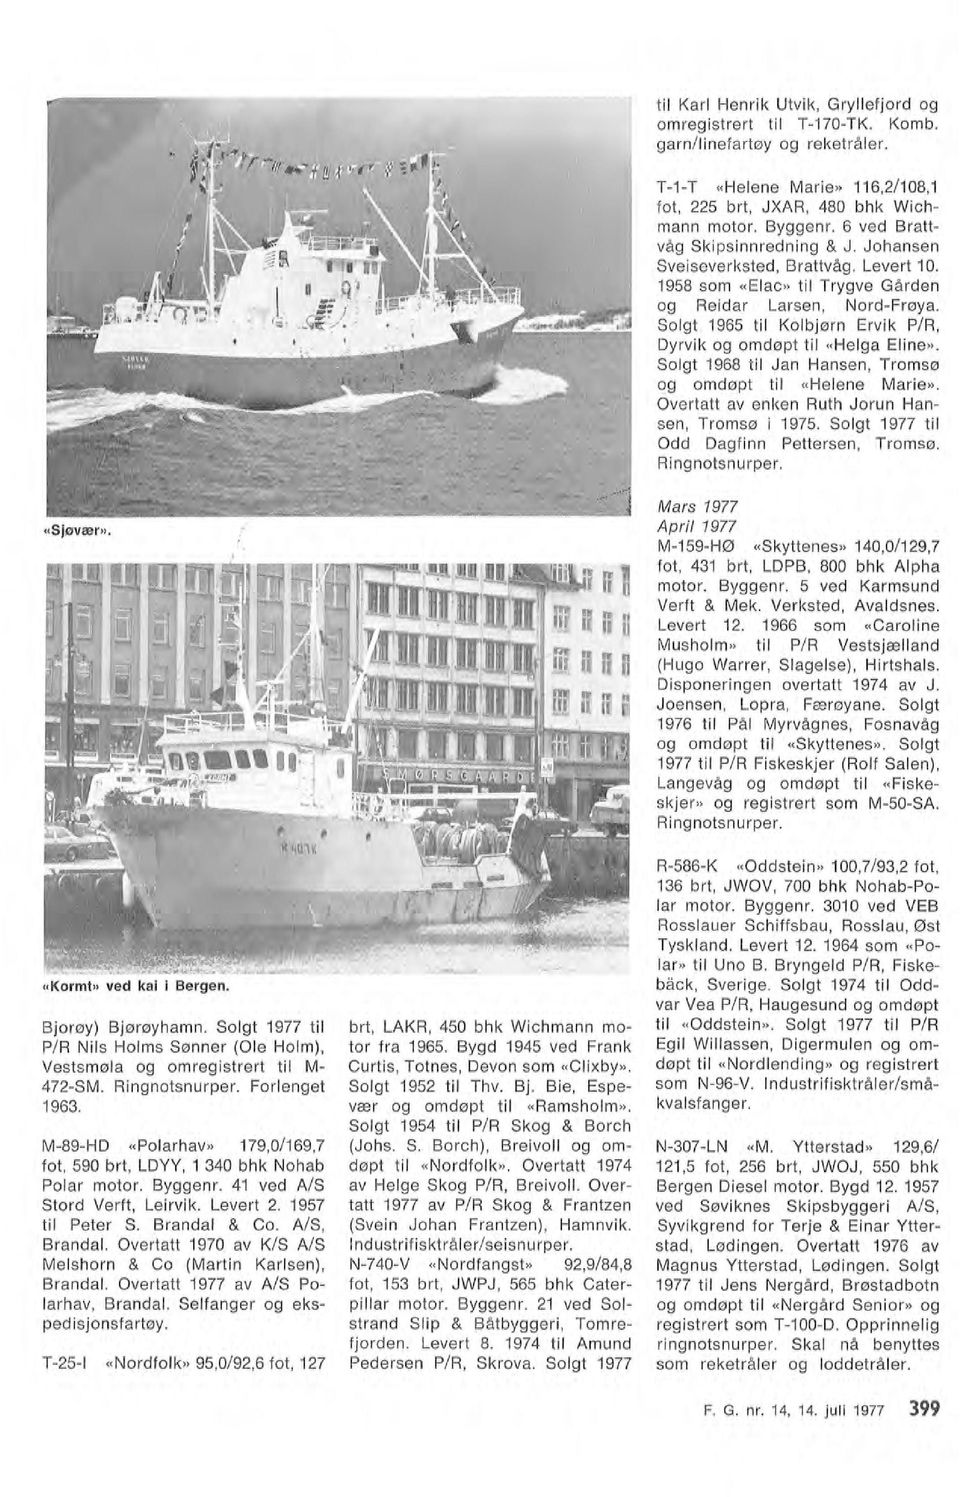 A/S, Branda. Overtatt 1970 av KIS A/S Meshorn & Co (Martin Karsen), Branda. Overtatt 1977 av A/S Poarhav, Branda. Sefanger og ekspedisjonsfartøy. Bjorøy) Bjørøyhamn.